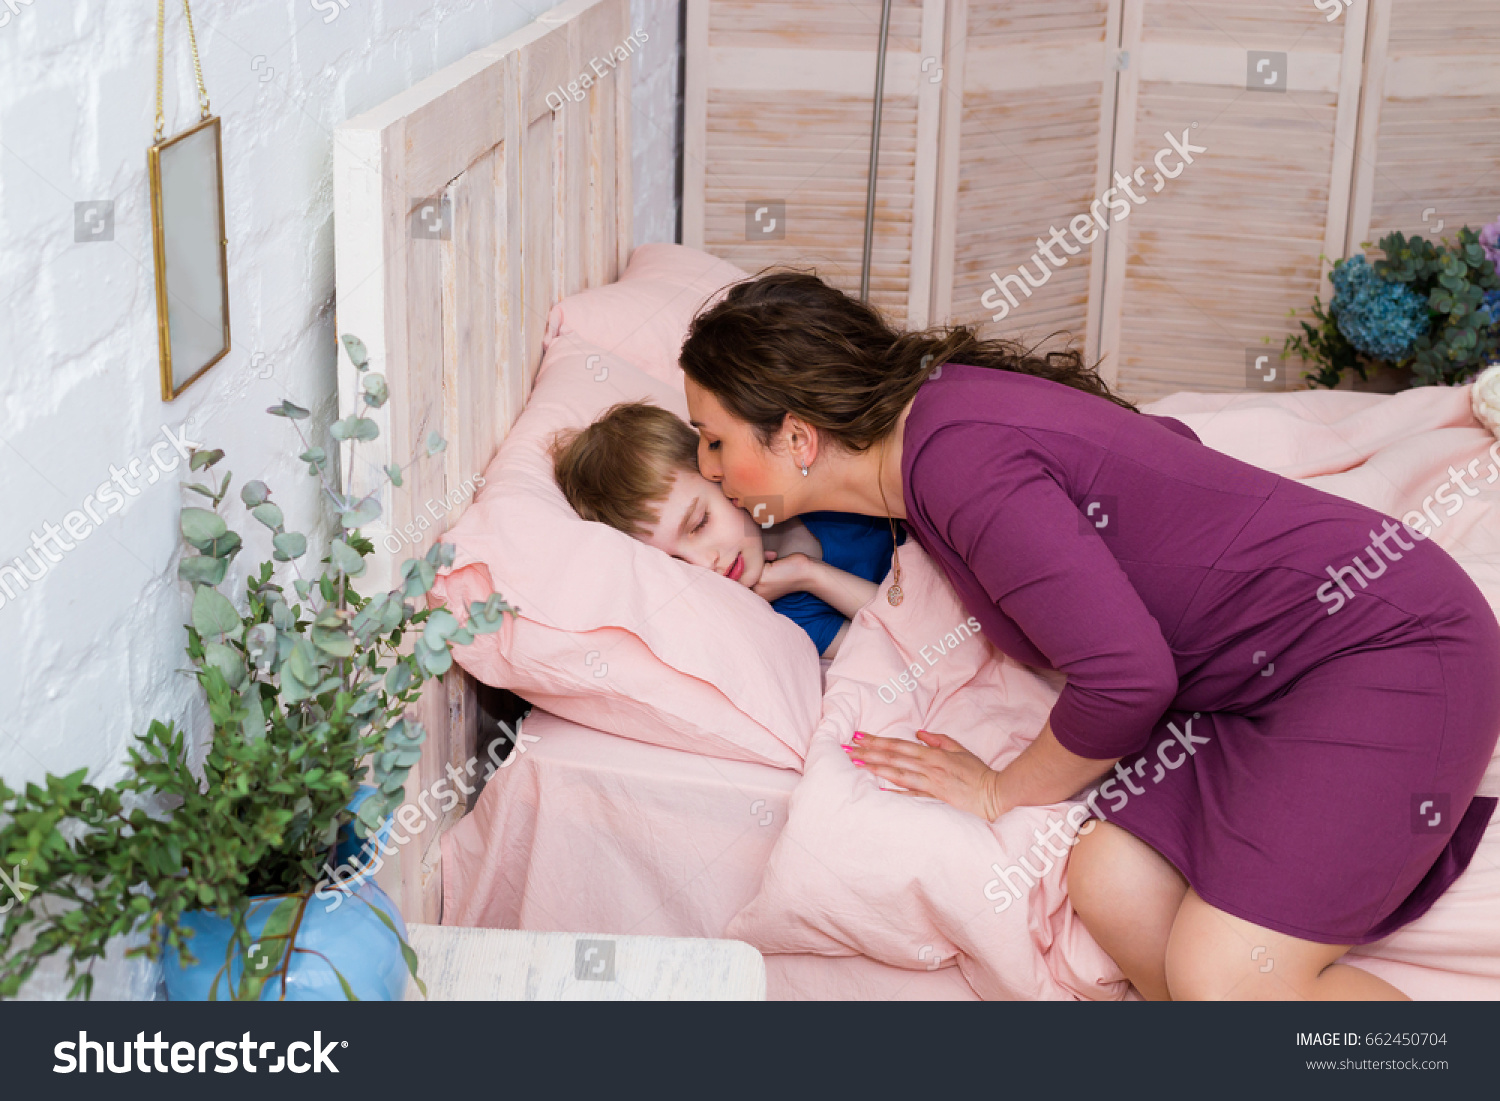 お母さん寝てる息子におやすみのキスを 可愛いお母さんが息子を寝かしつけた お母さんはベッドで赤ちゃんにキスをしている 寝室で寝ているお母さんと子ども の写真素材 今すぐ編集